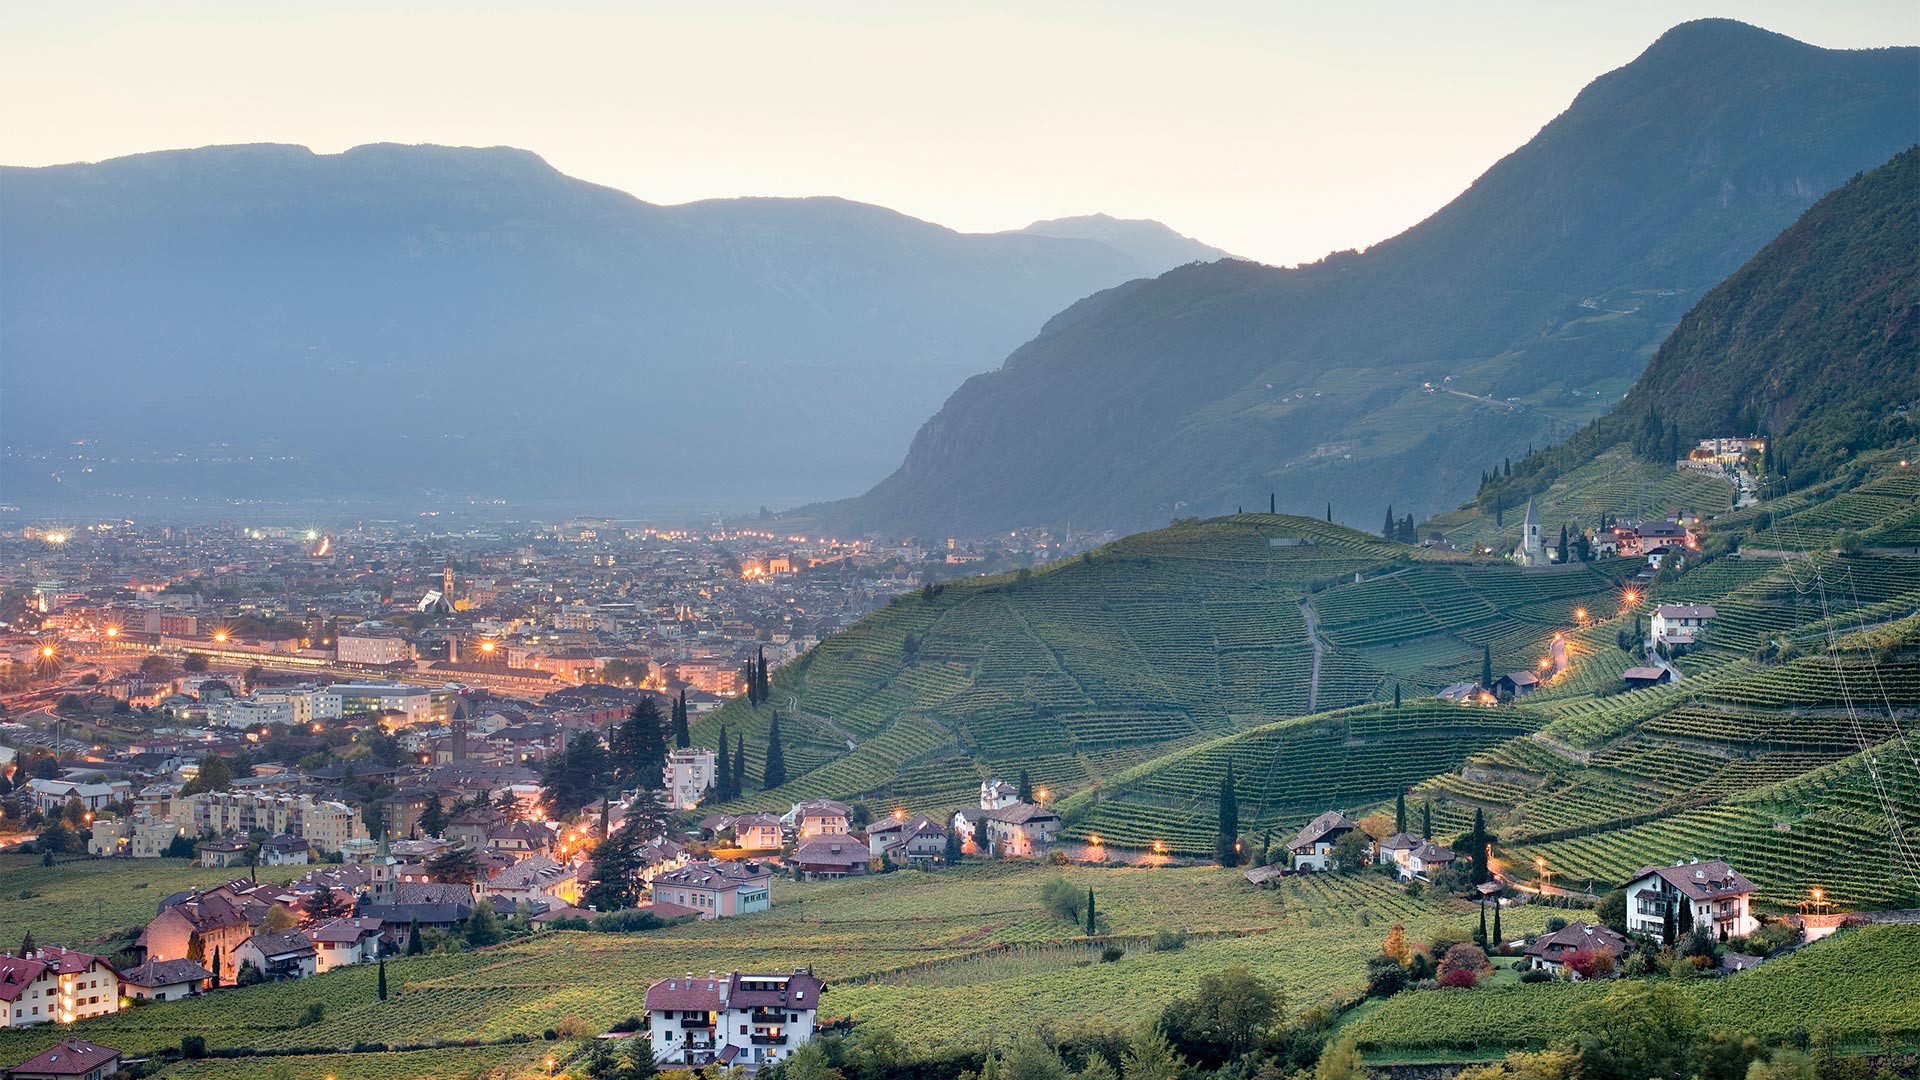 Panorama serale sui vigneti Bolzano in primo piano e la città illuminata sotto le montagne sullo sfondo.